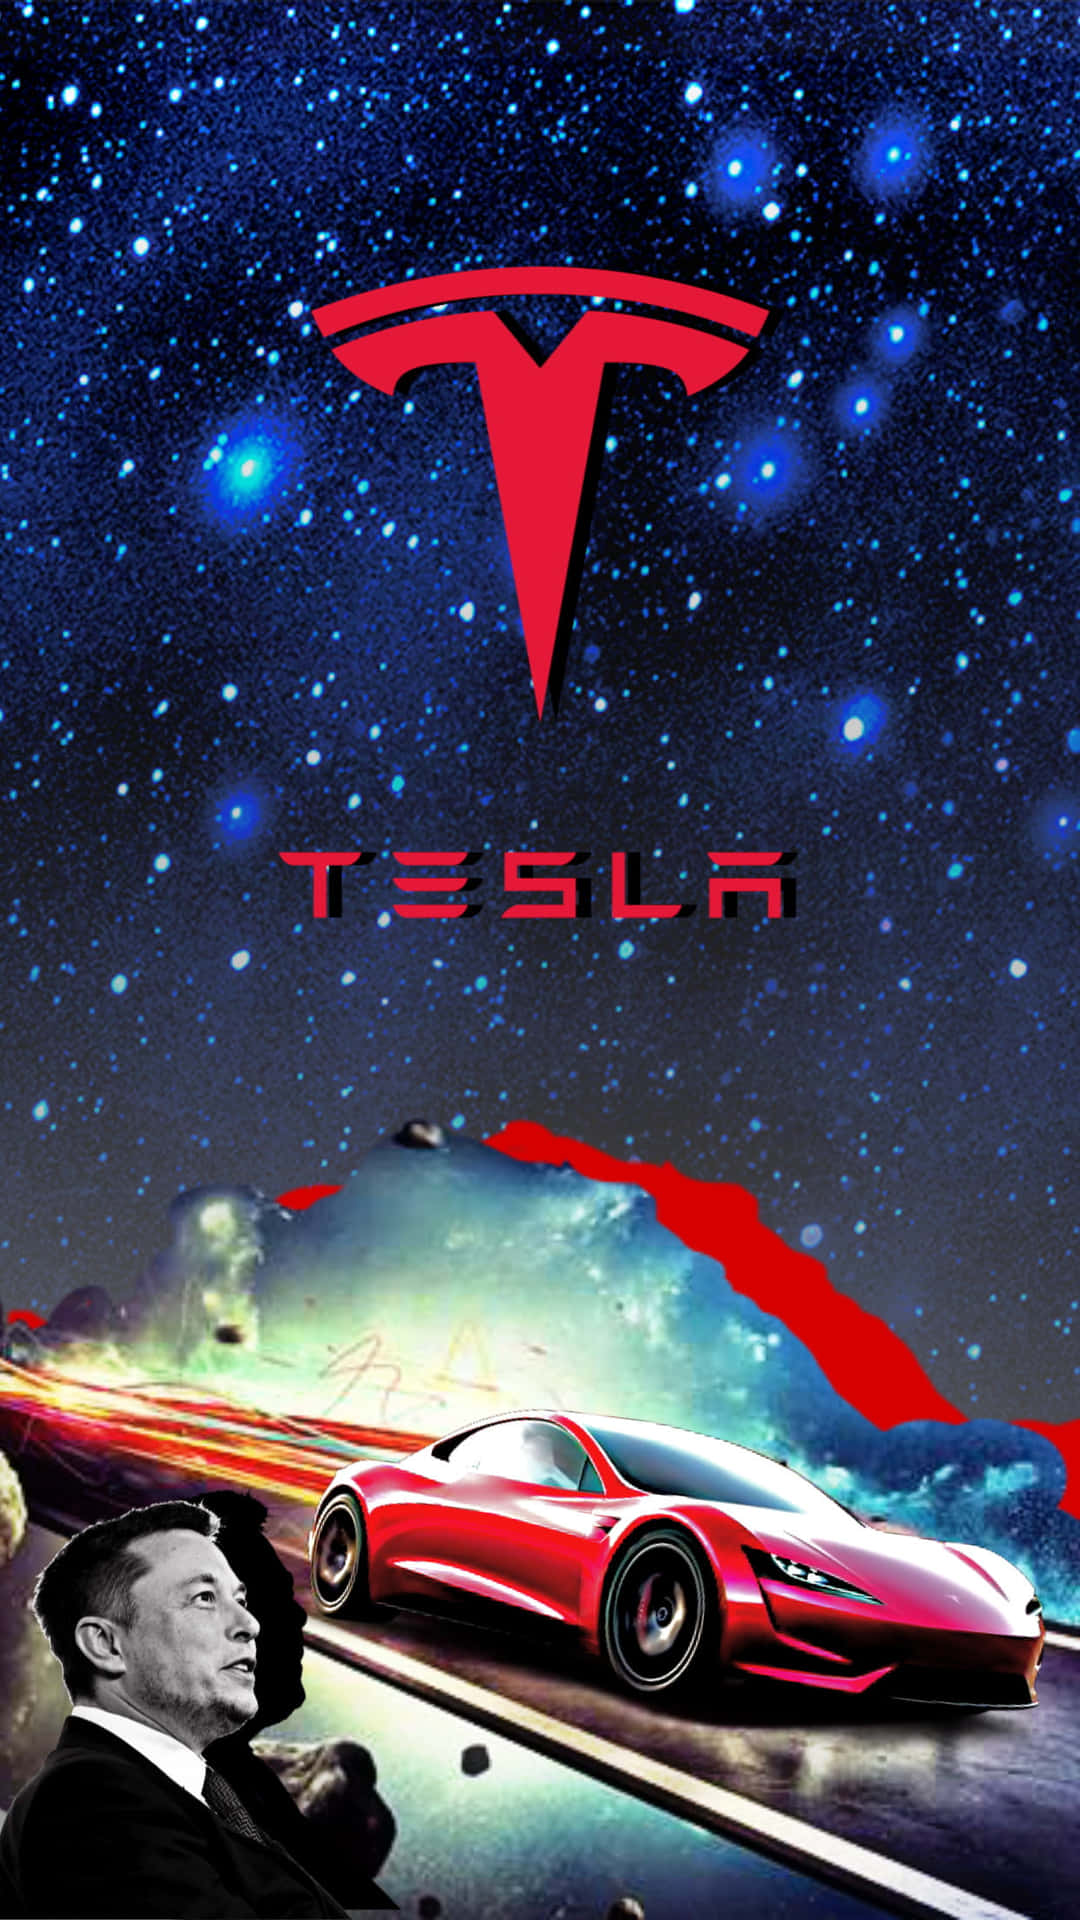 Download Tesla Iphone Wallpaper 